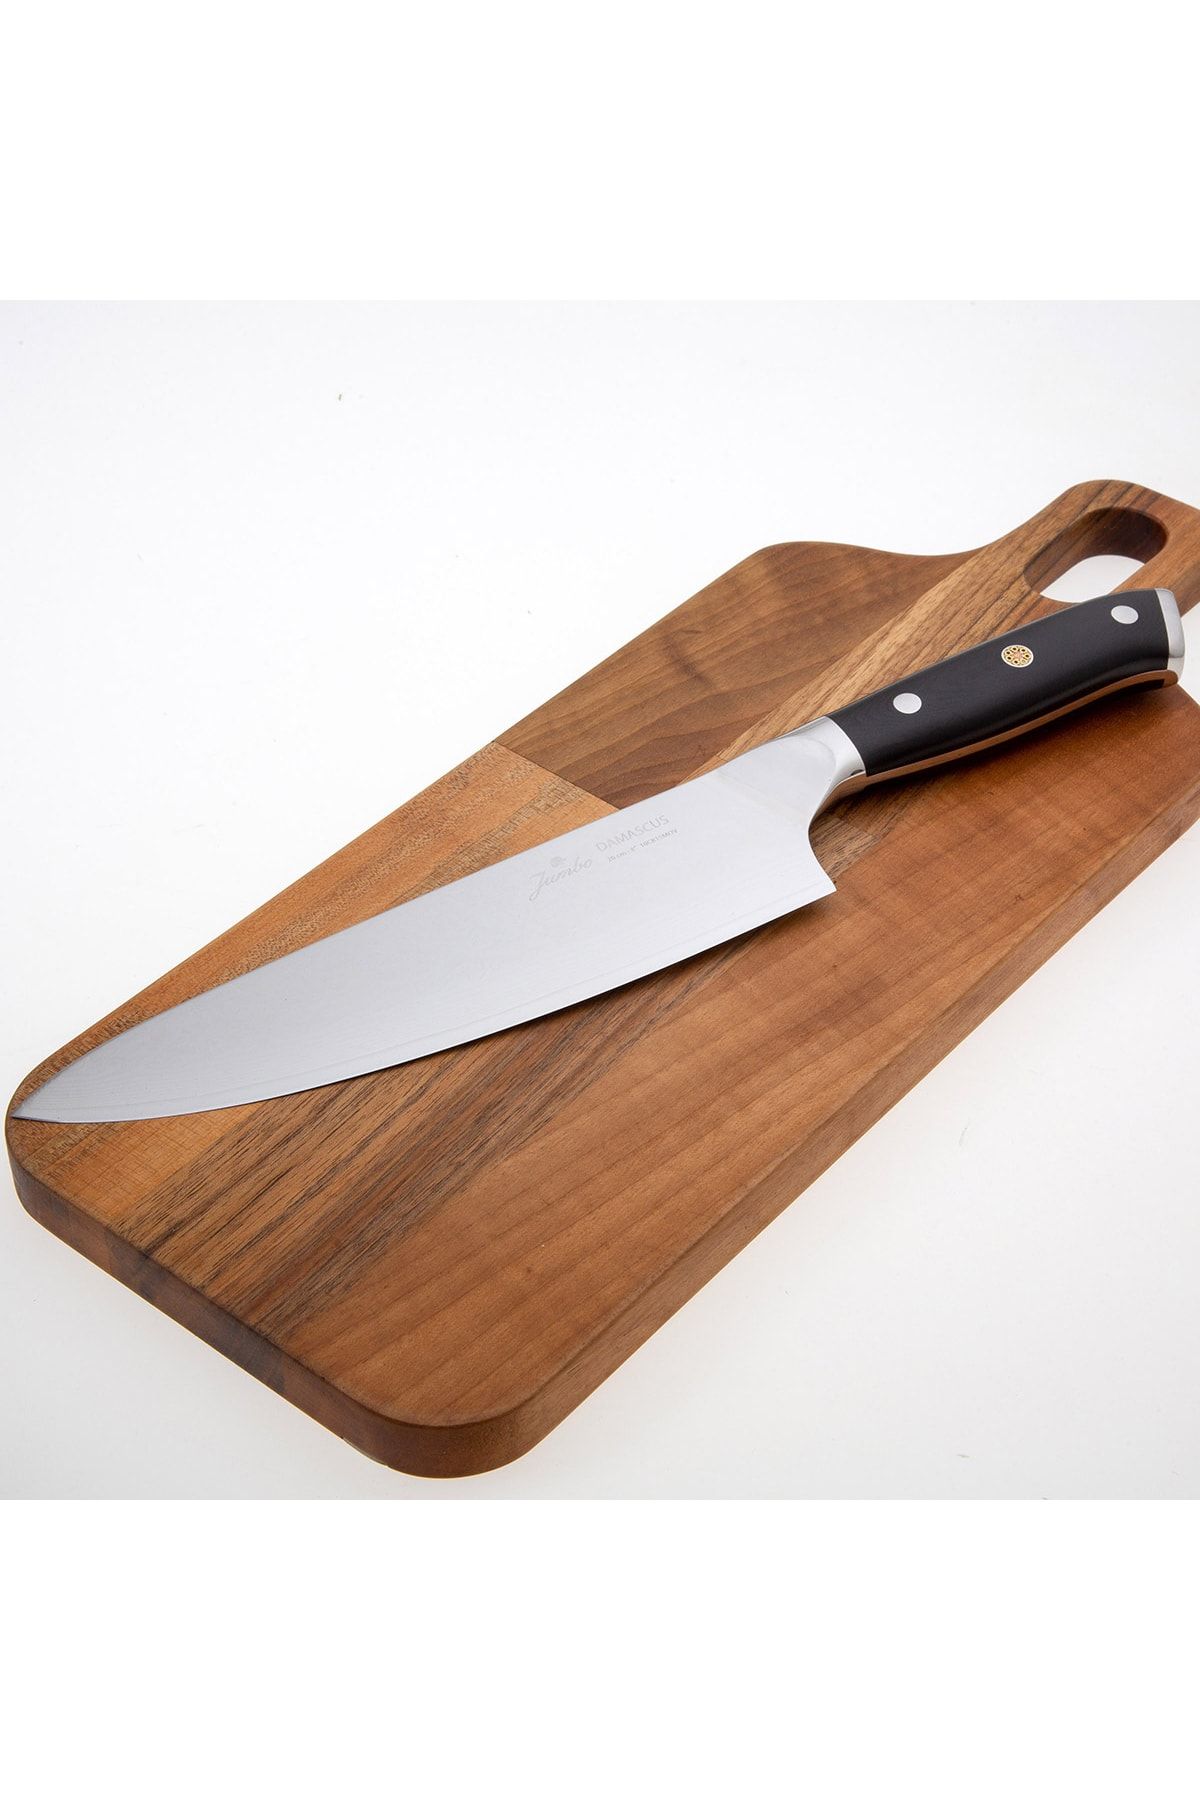 Jumbo Kitaye Damascus 20 Cm Chef Bıçak